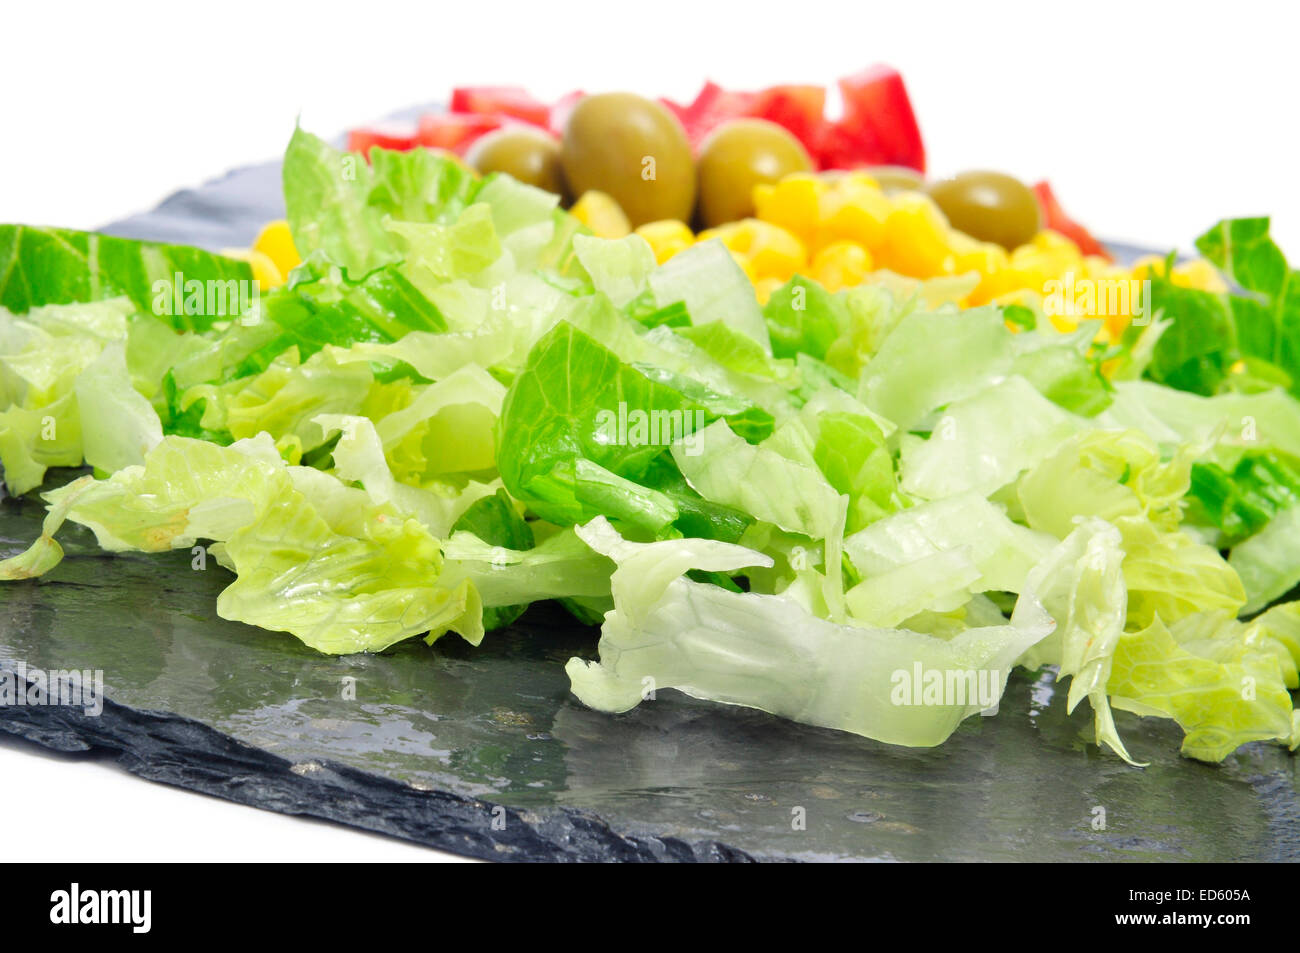 Primo piano di alcuni ingredienti insalata, quali lattuga, grano, olive e pomodoro, su di una superficie di ardesia Foto Stock